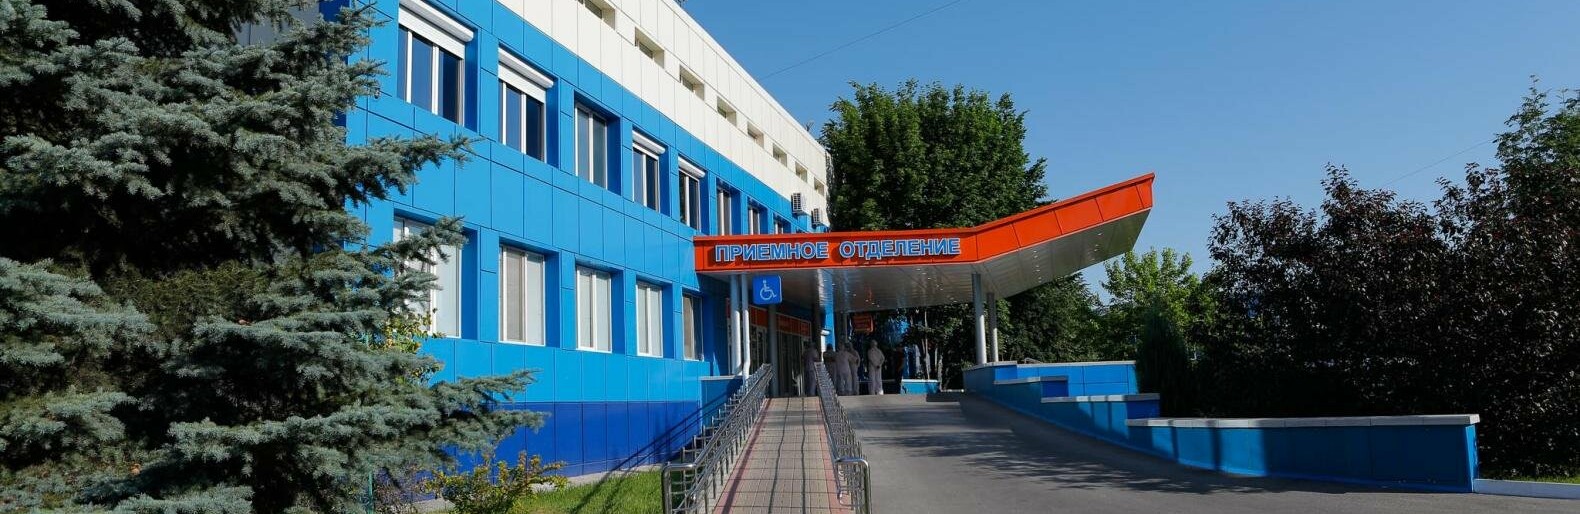 Белгородцы пожаловались на отсутствие москитных сеток в больнице